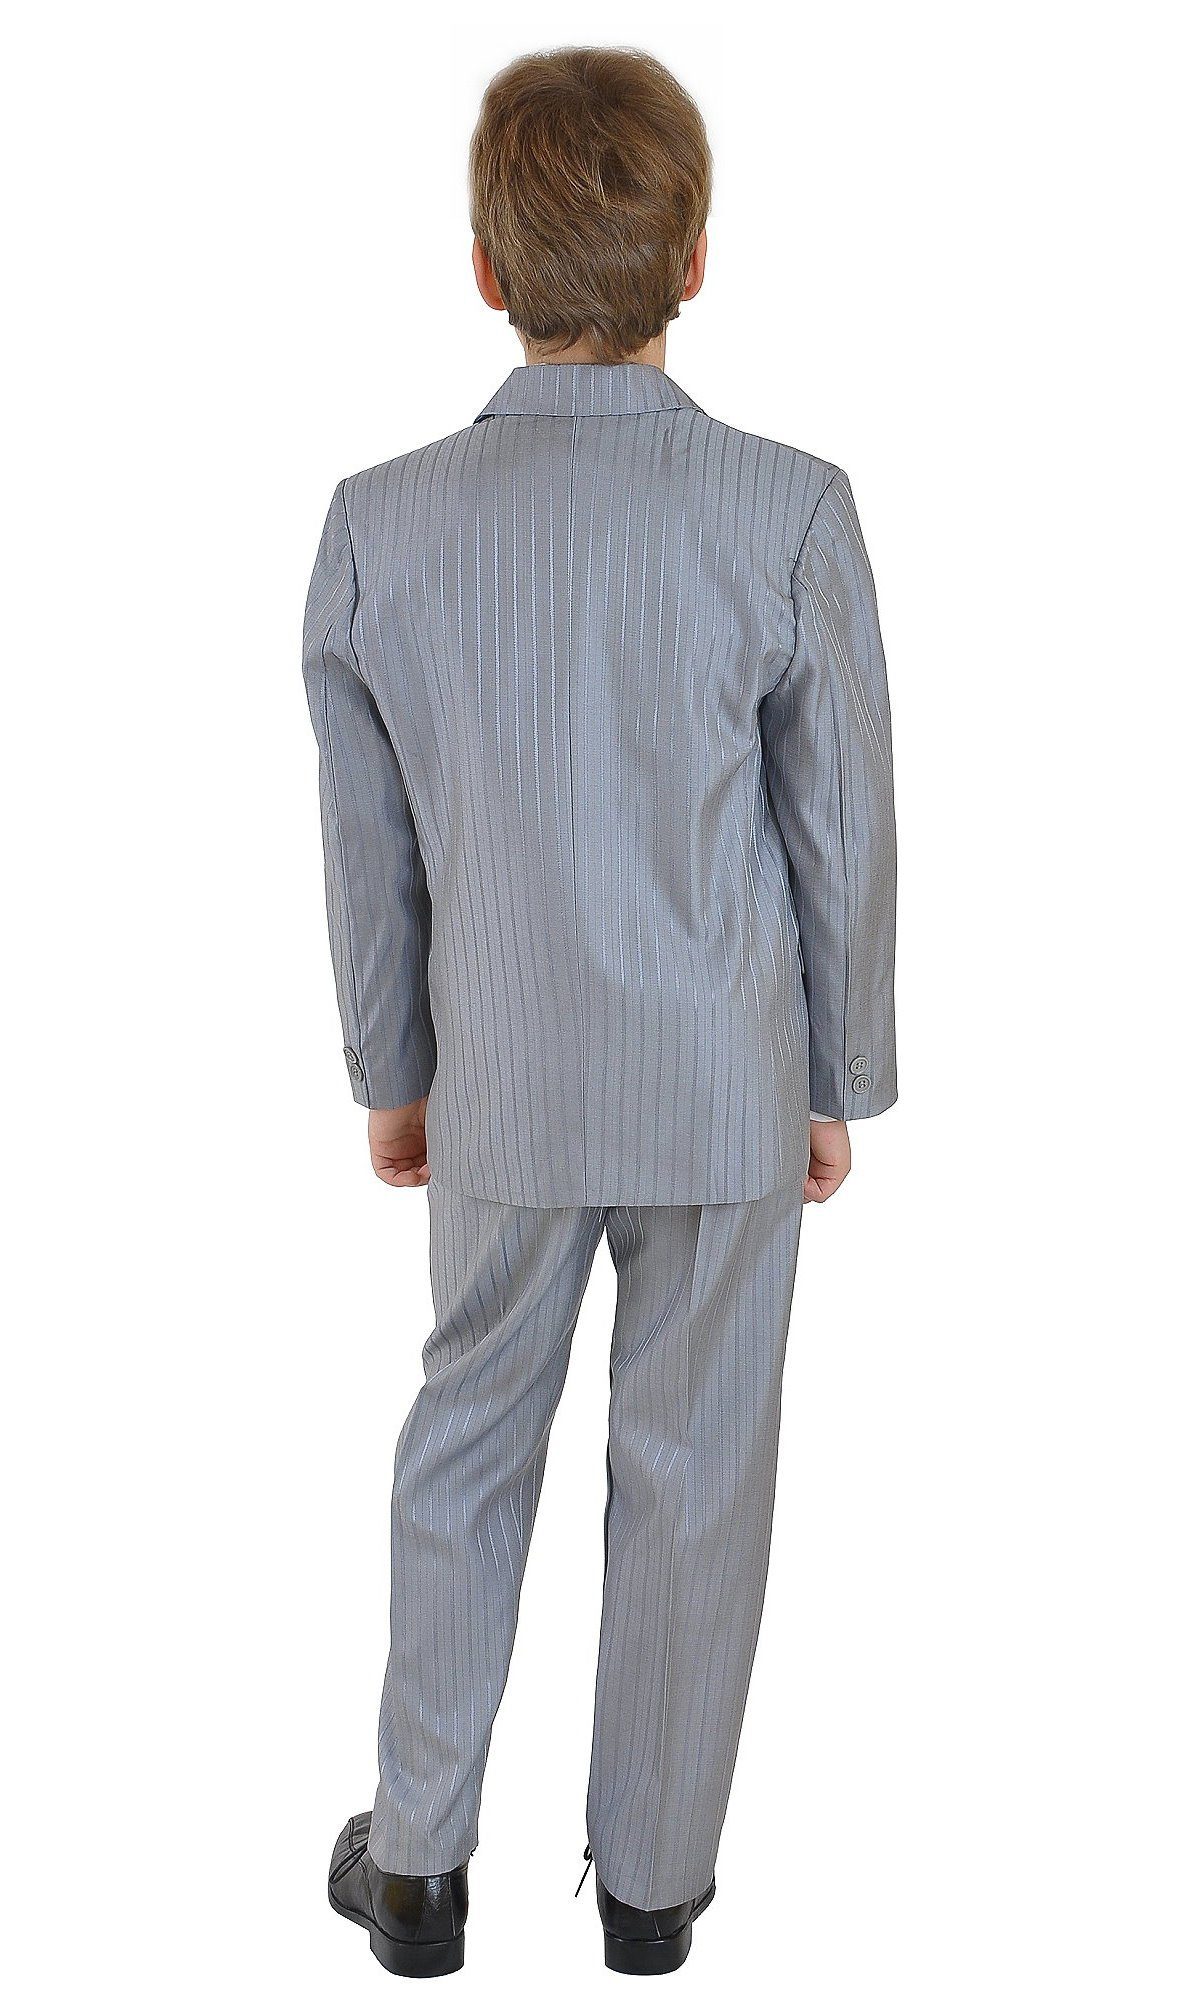 Family Trends Anzug Kombination Set 5 family-trends Teilig Weste von für Hemd 5-teilige Sakko Anzug-Kombination Jungen Krawatte Hose